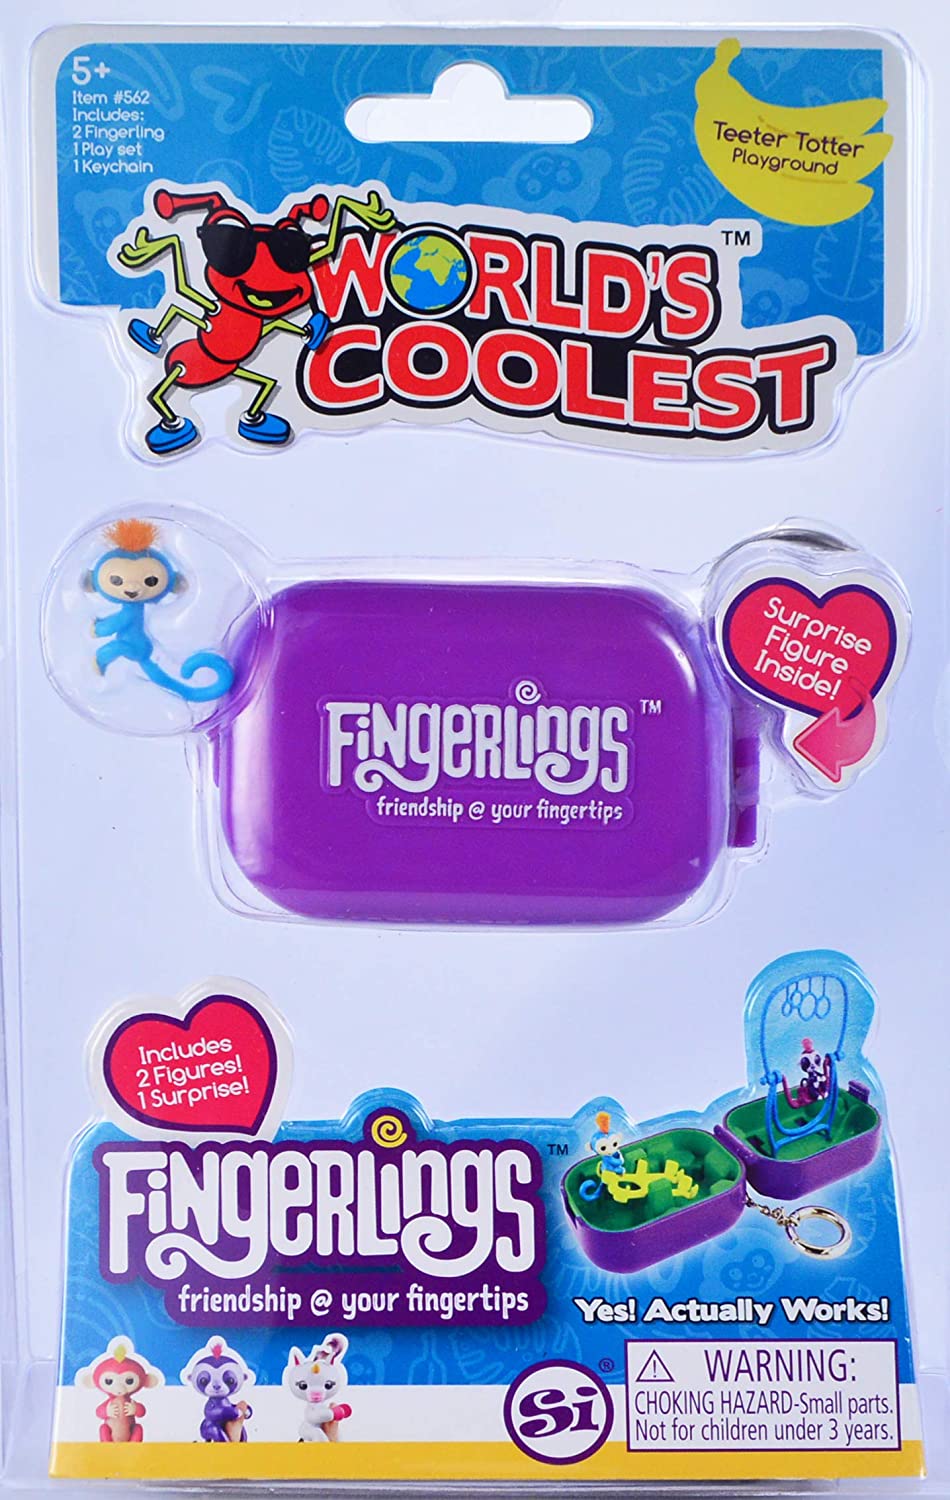 World's Coolest Fingerlings